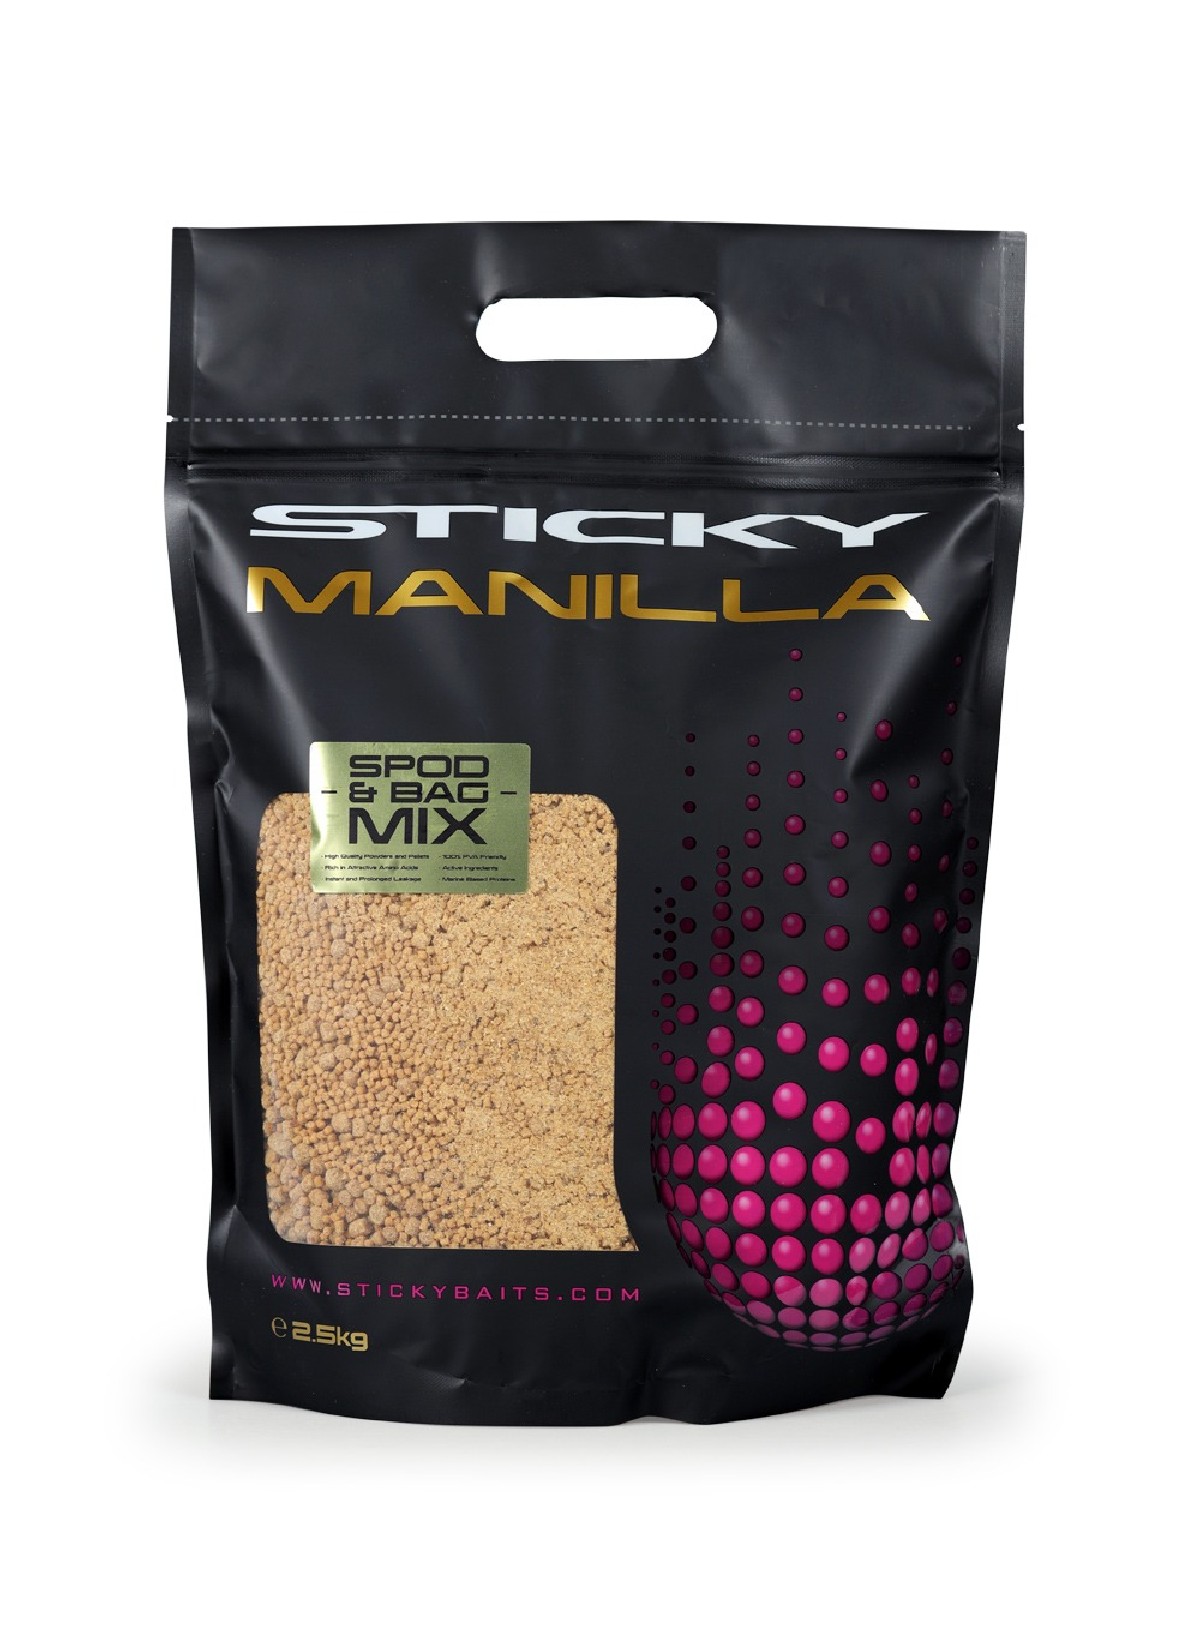 Sticky Baits Manilla Spod & Bag Mix 2,5Kg